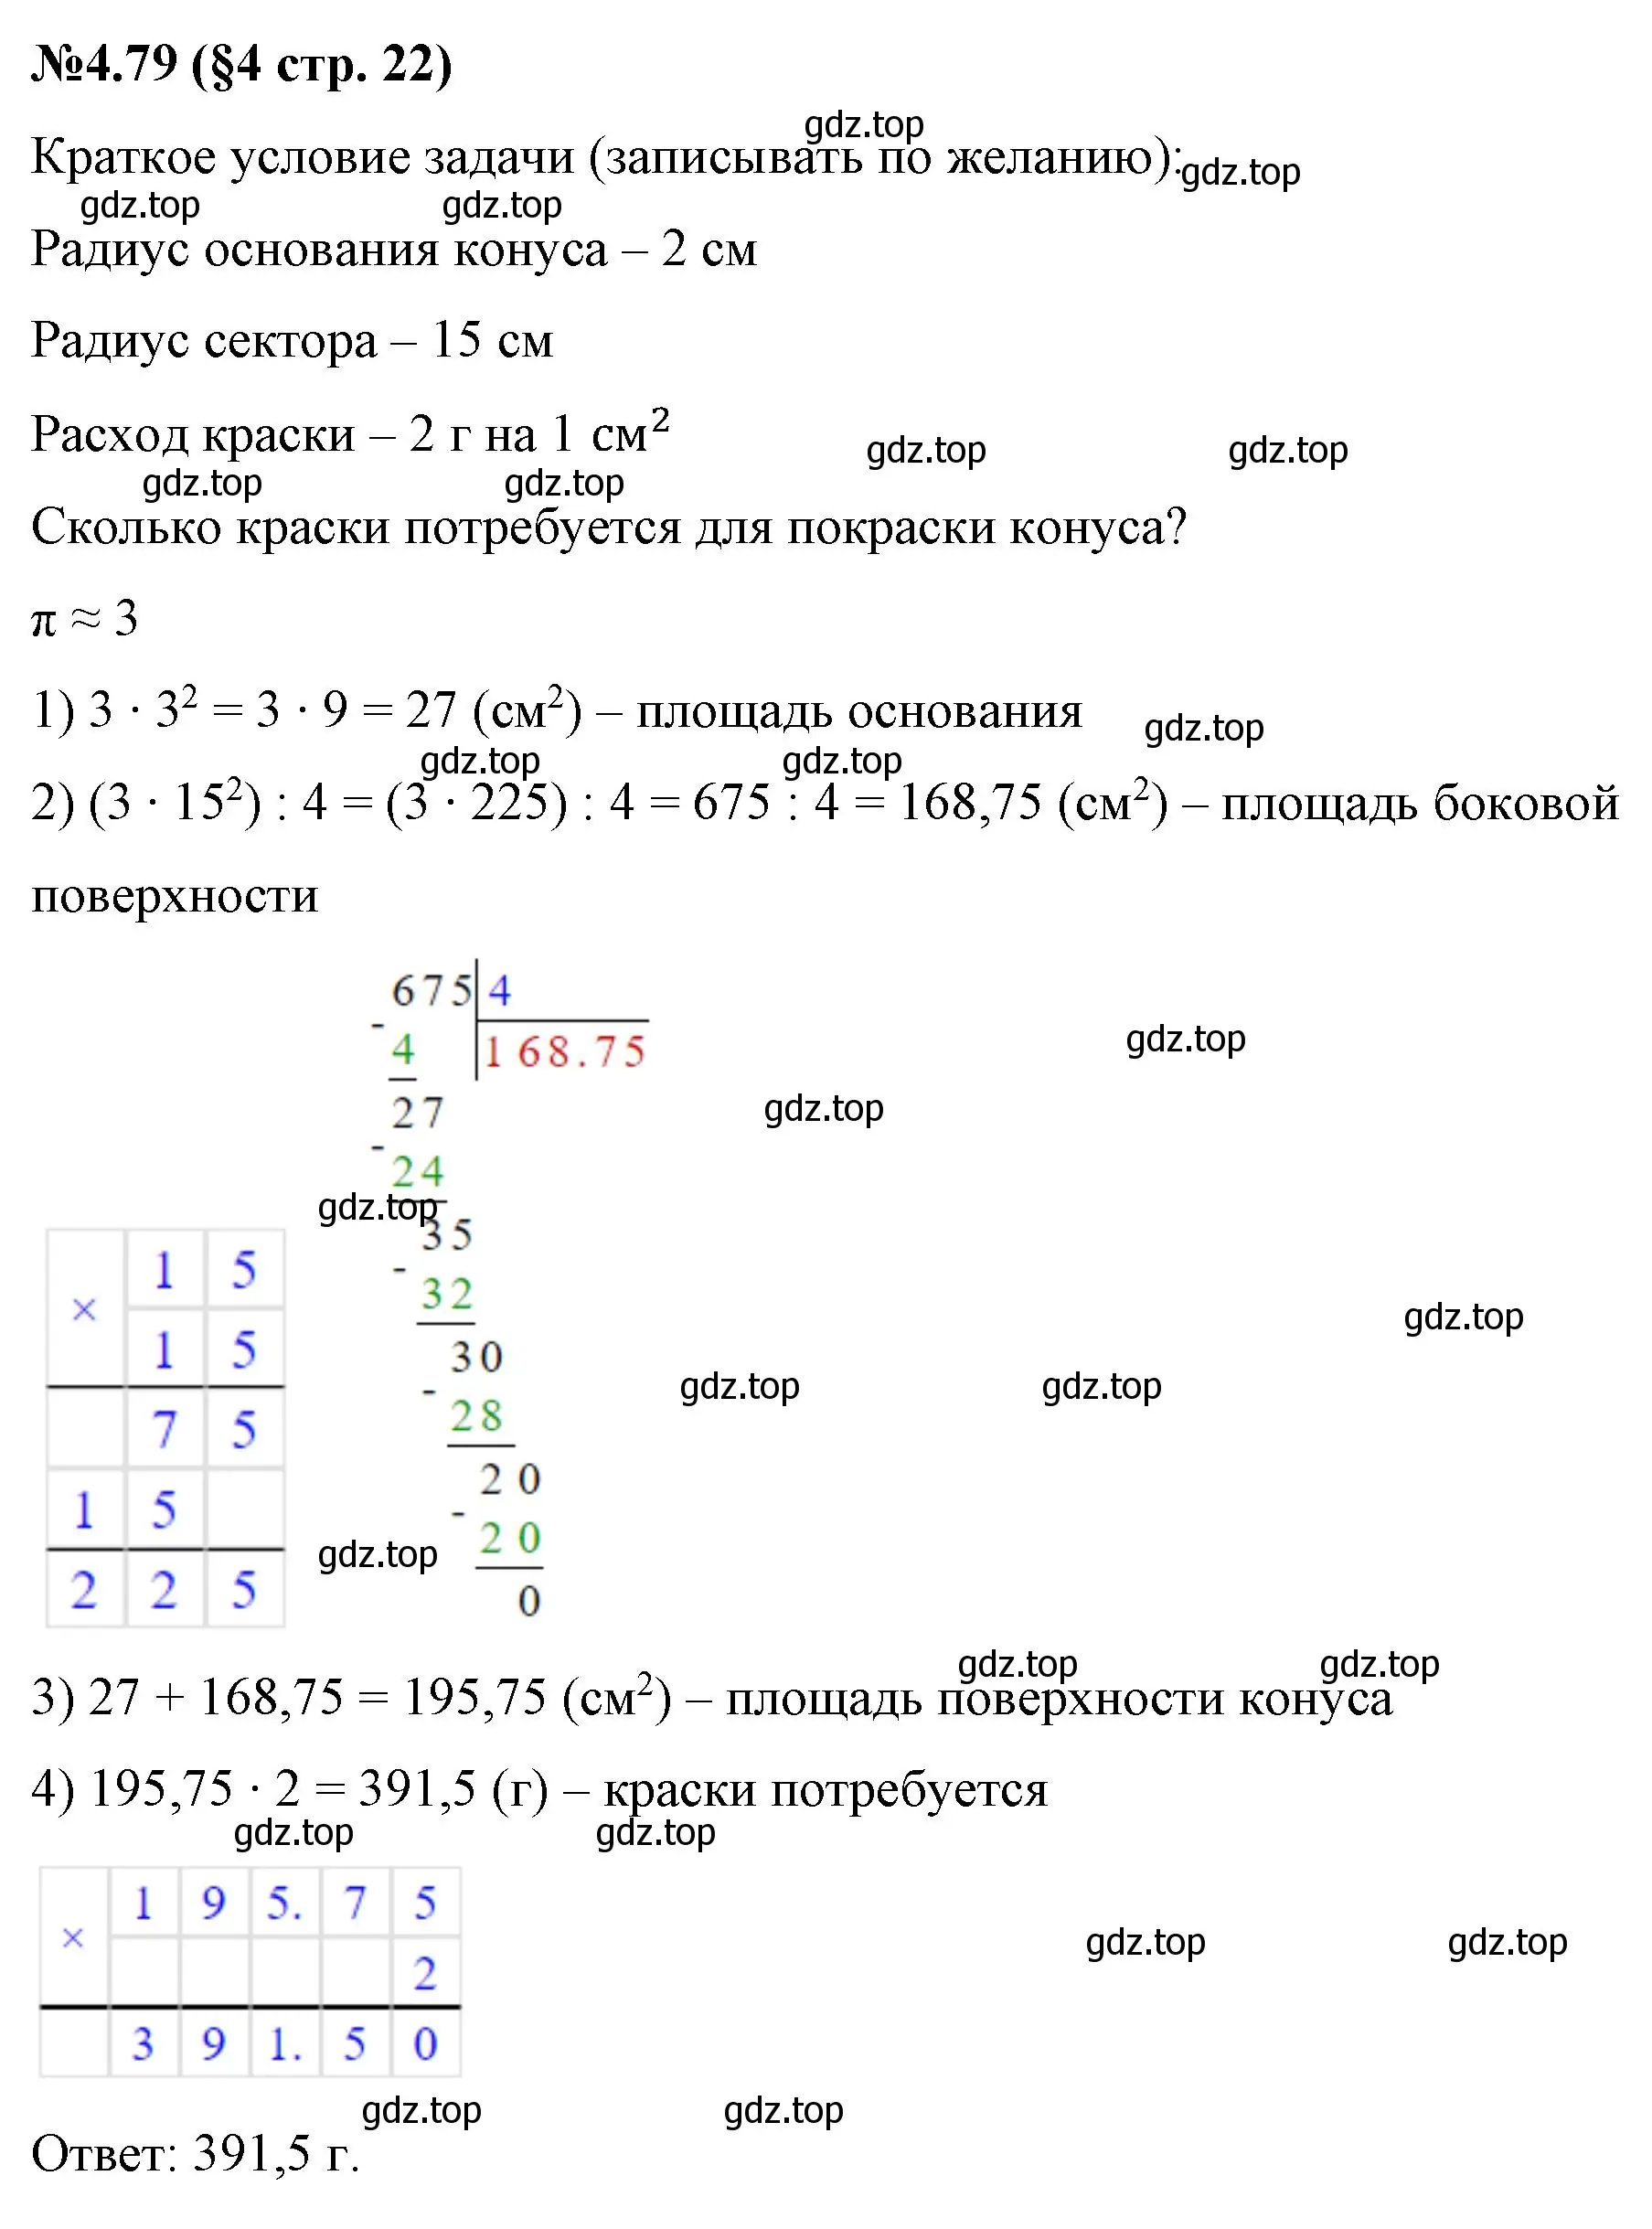 Решение номер 4.79 (страница 22) гдз по математике 6 класс Виленкин, Жохов, учебник 2 часть